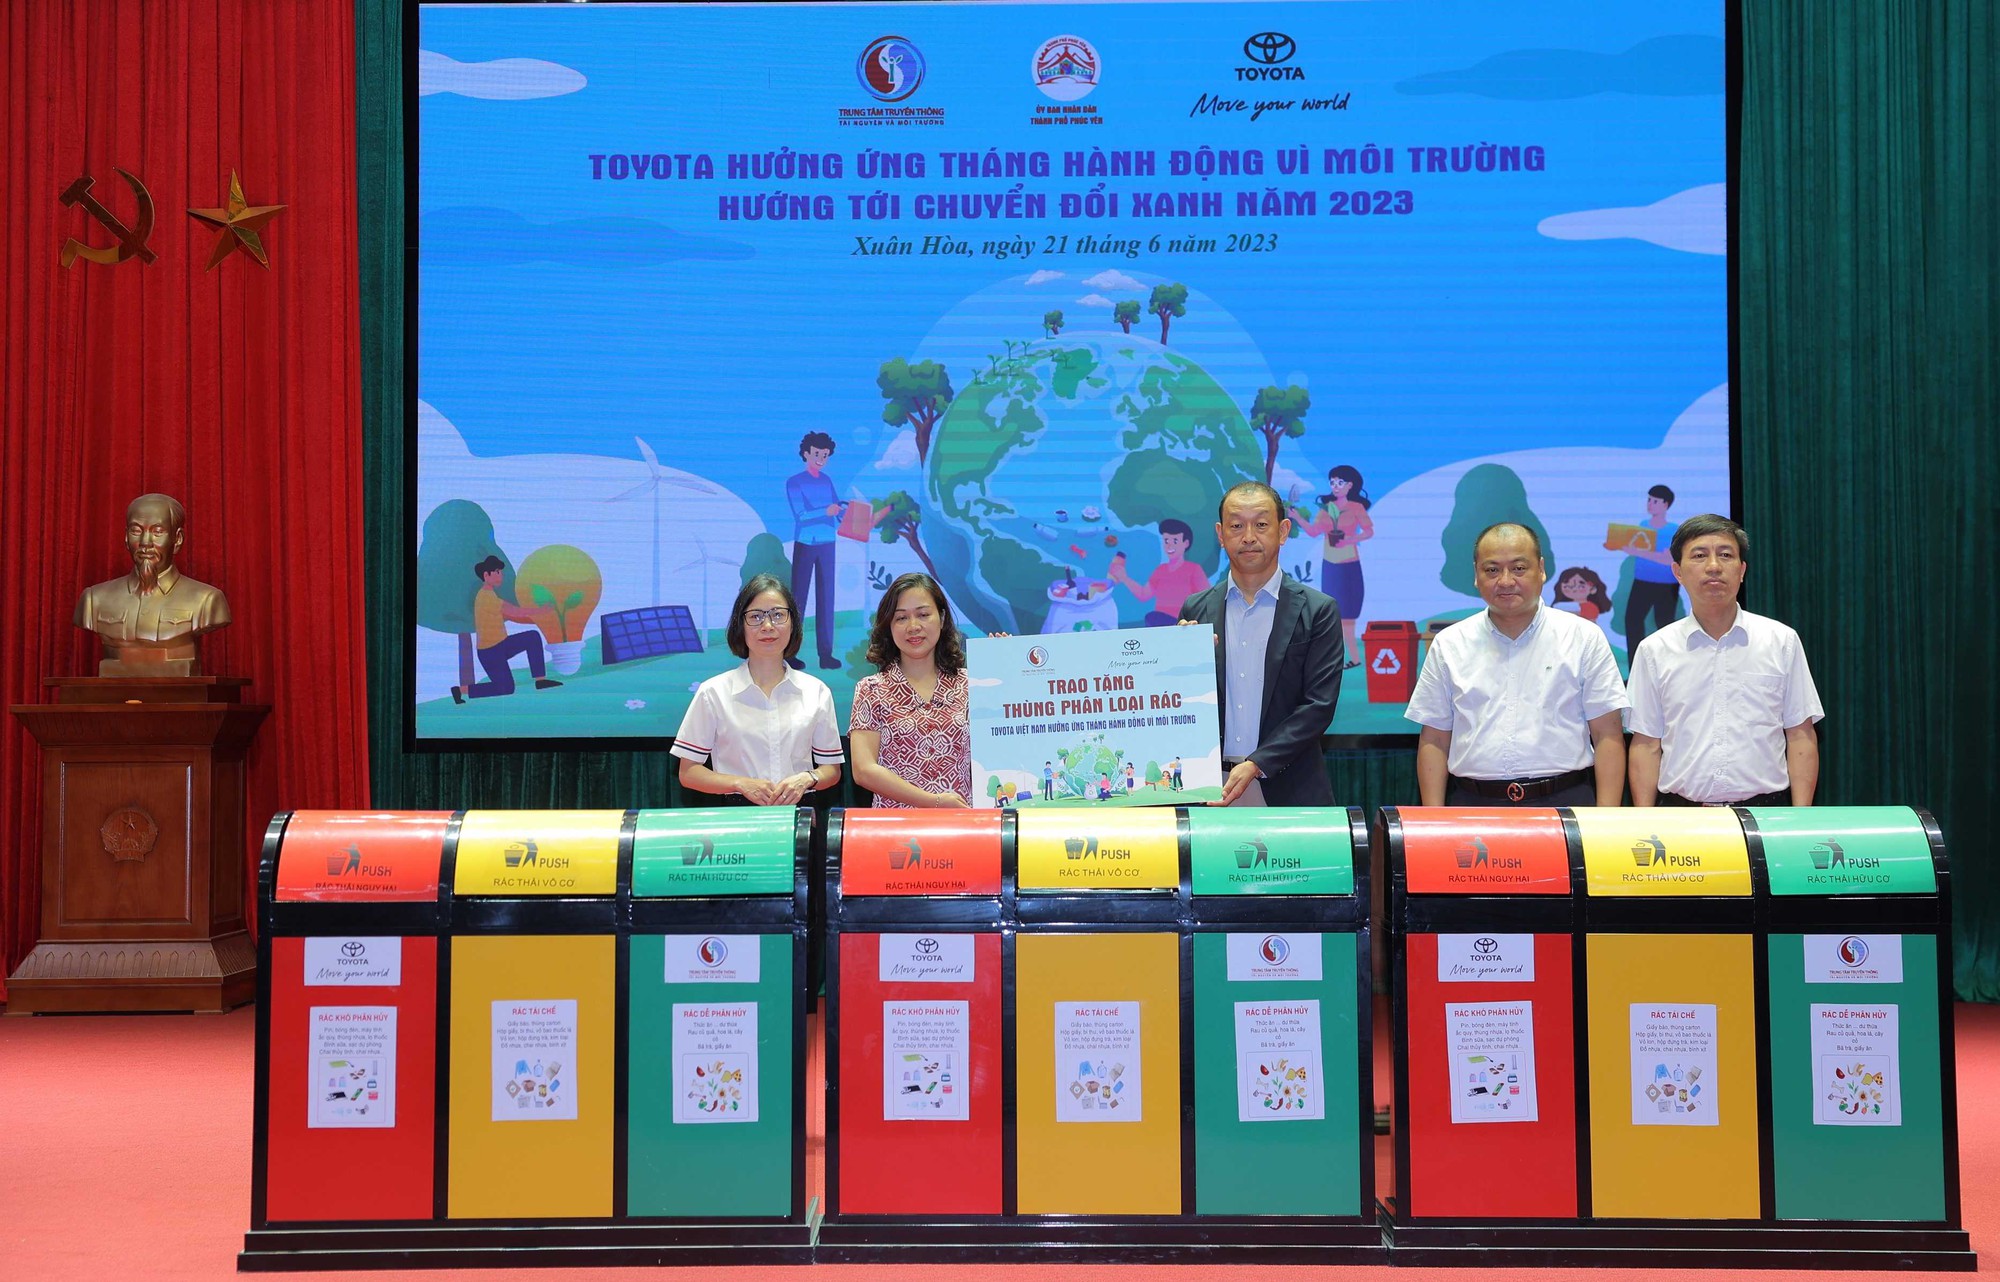 Toyota Việt Nam hưởng ứng tháng hành động vì môi trường hướng tới chuyển đổi xanh năm 2023 tại tỉnh Vĩnh Phúc - Ảnh 2.